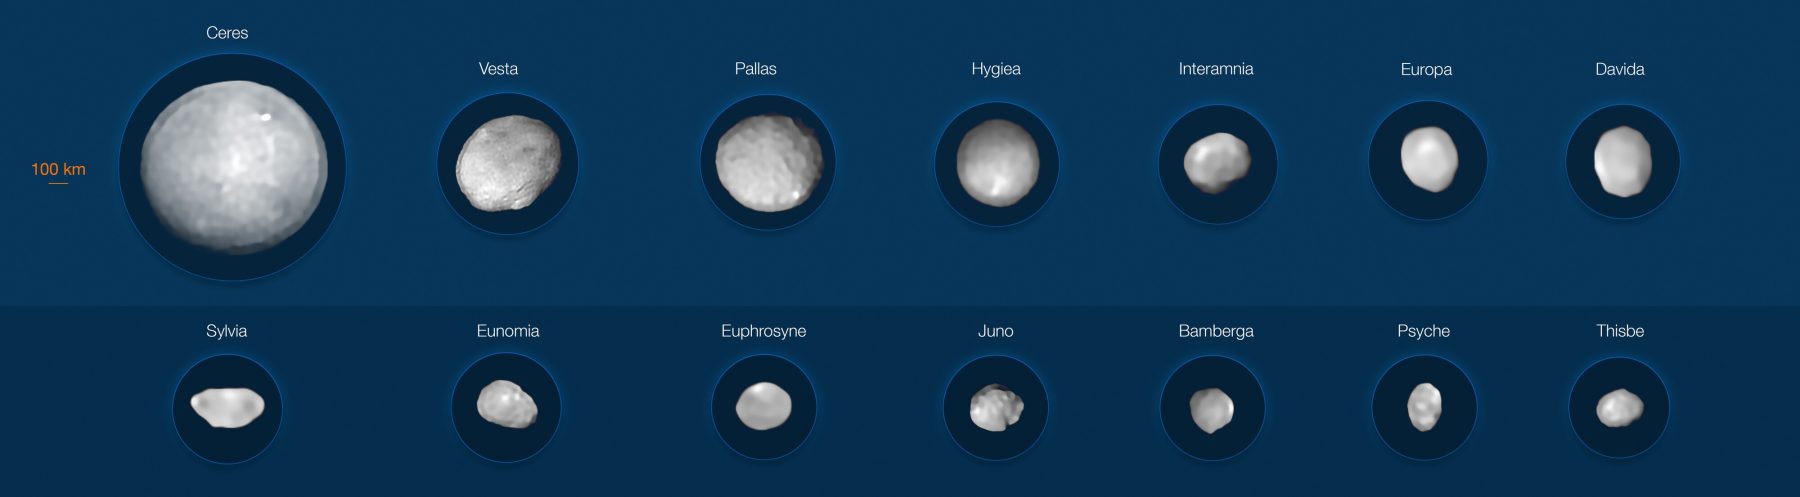 14 крупнейших астероидов Солнечной системы. Предоставлено: М. Корнмессер, Вернацца и др. (ESO); Алгоритм MISTRAL (ONERA / CNRS)